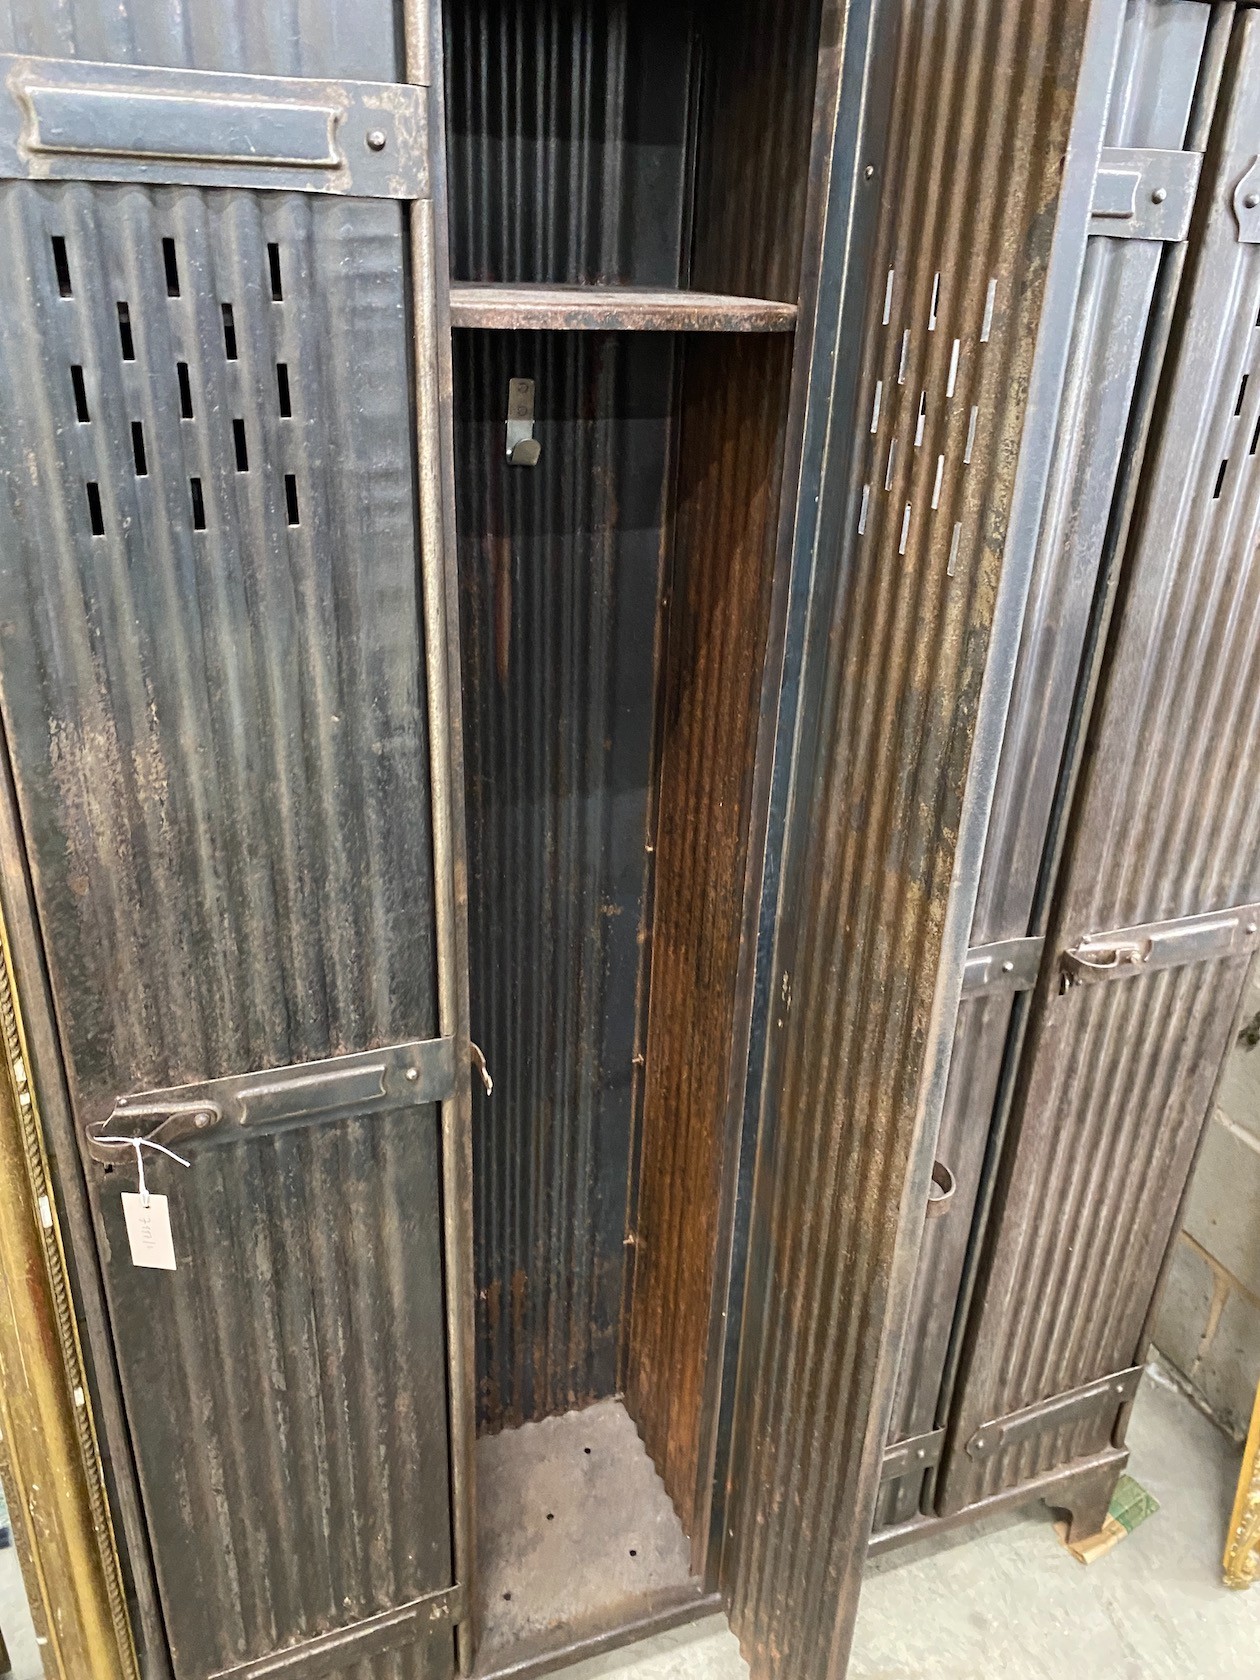 An industrial style metal four door locker, width 123cm, depth 33cm, height 184cm